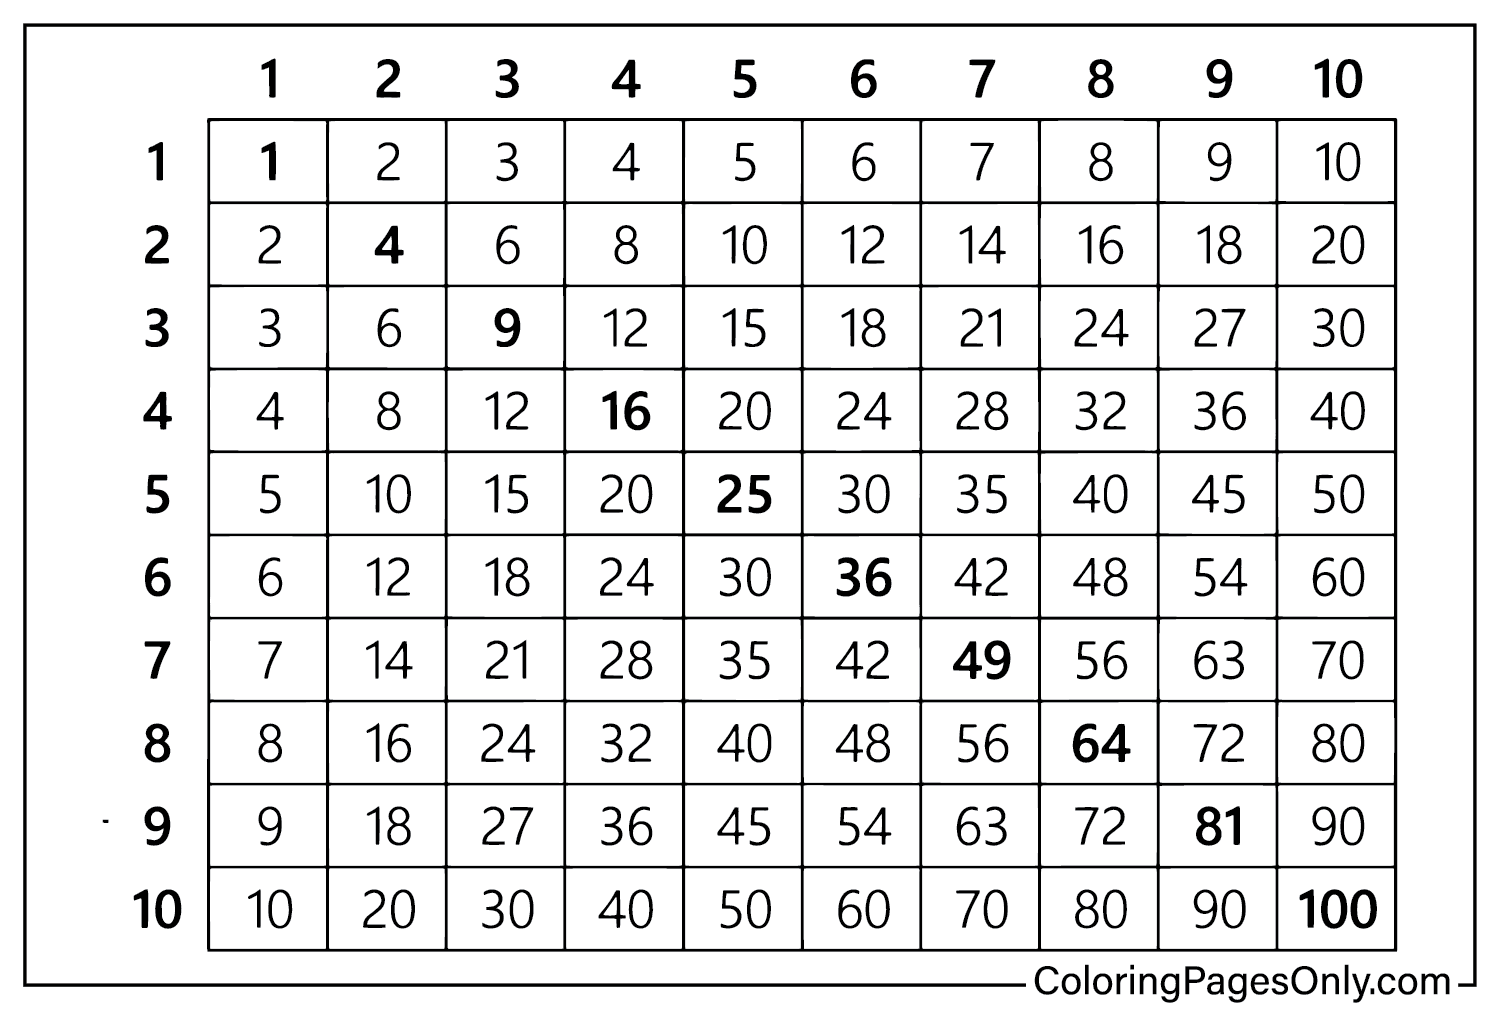 Tableau de multiplication des couleurs à partir du tableau de multiplication